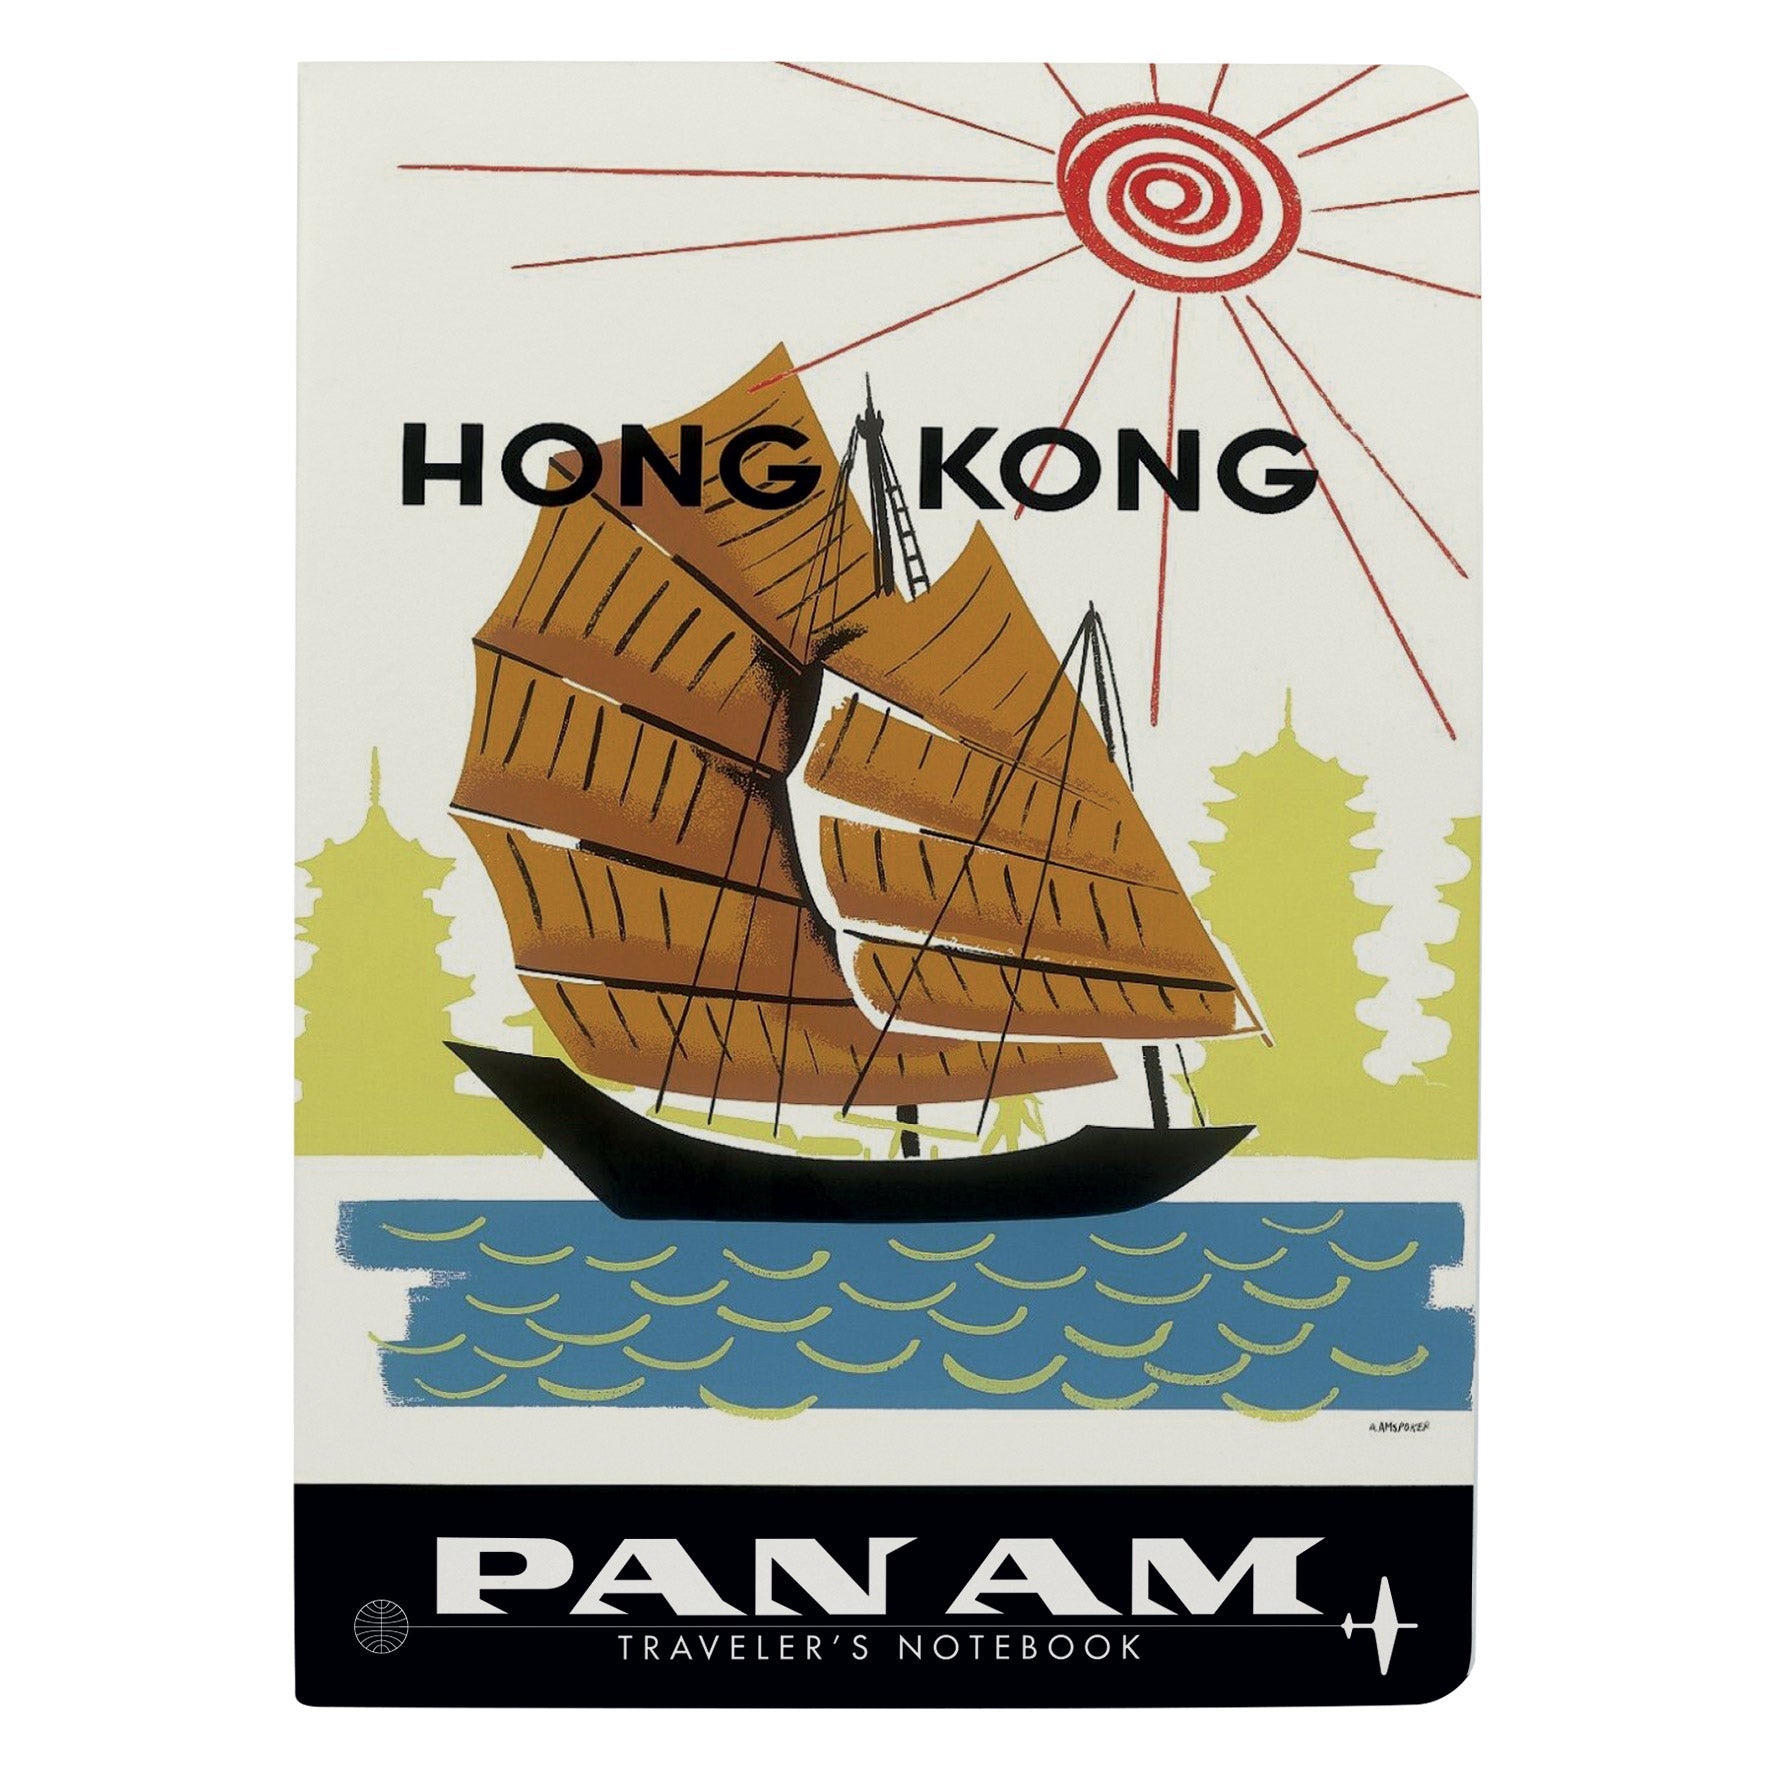 Pan Am Hong Kong Notebook